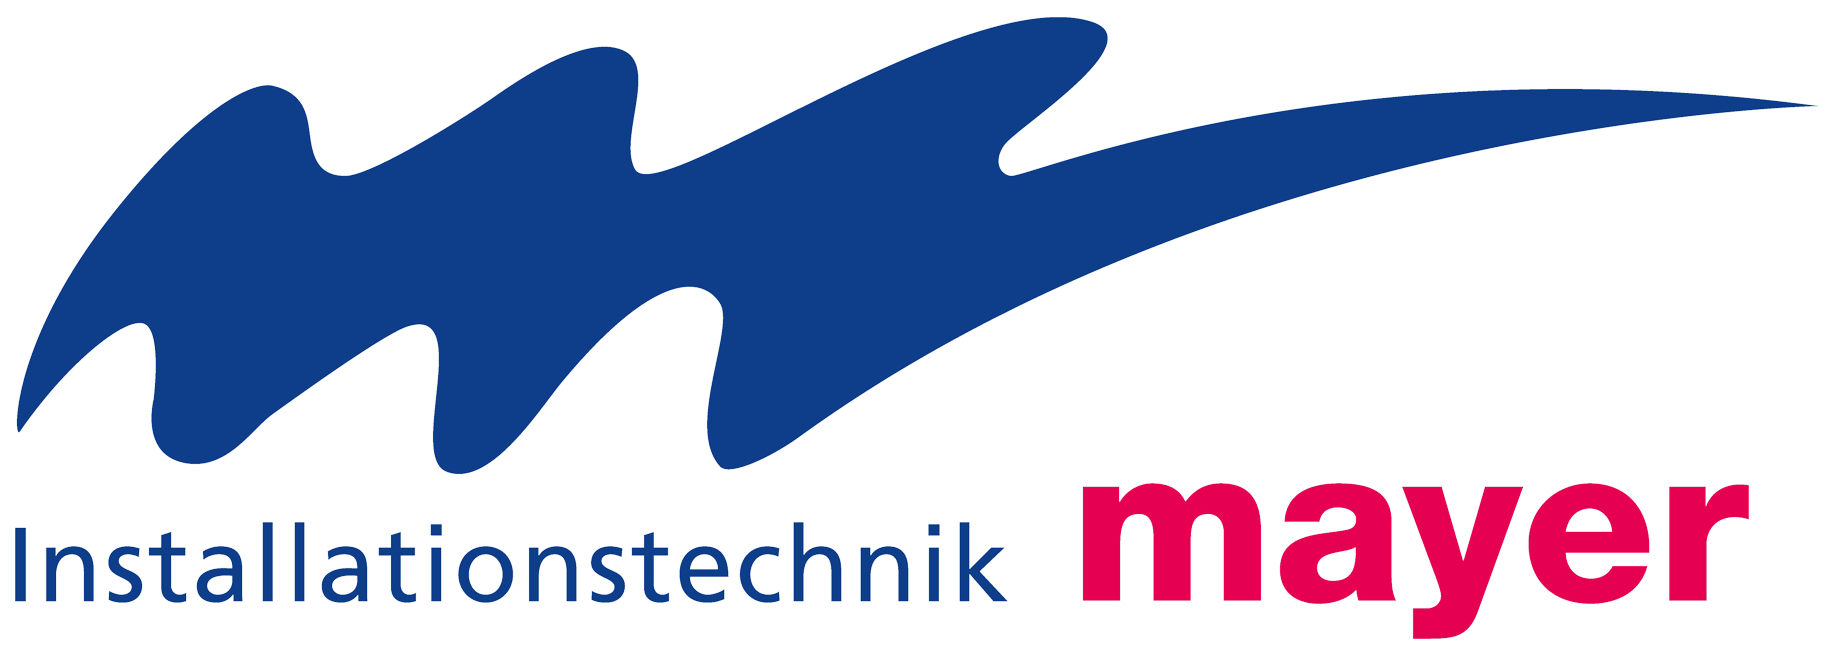 Logo - Mayer Installationstechnik